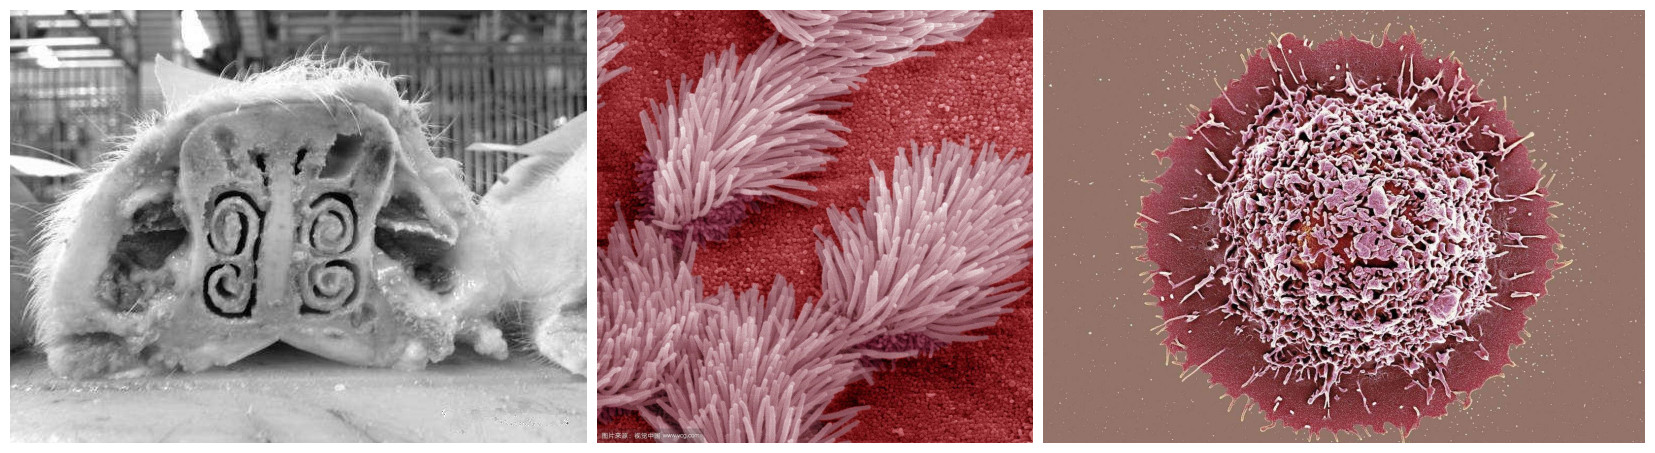 鼻甲骨（左）、呼吸道纤毛（中）、肺泡巨噬细胞（右）